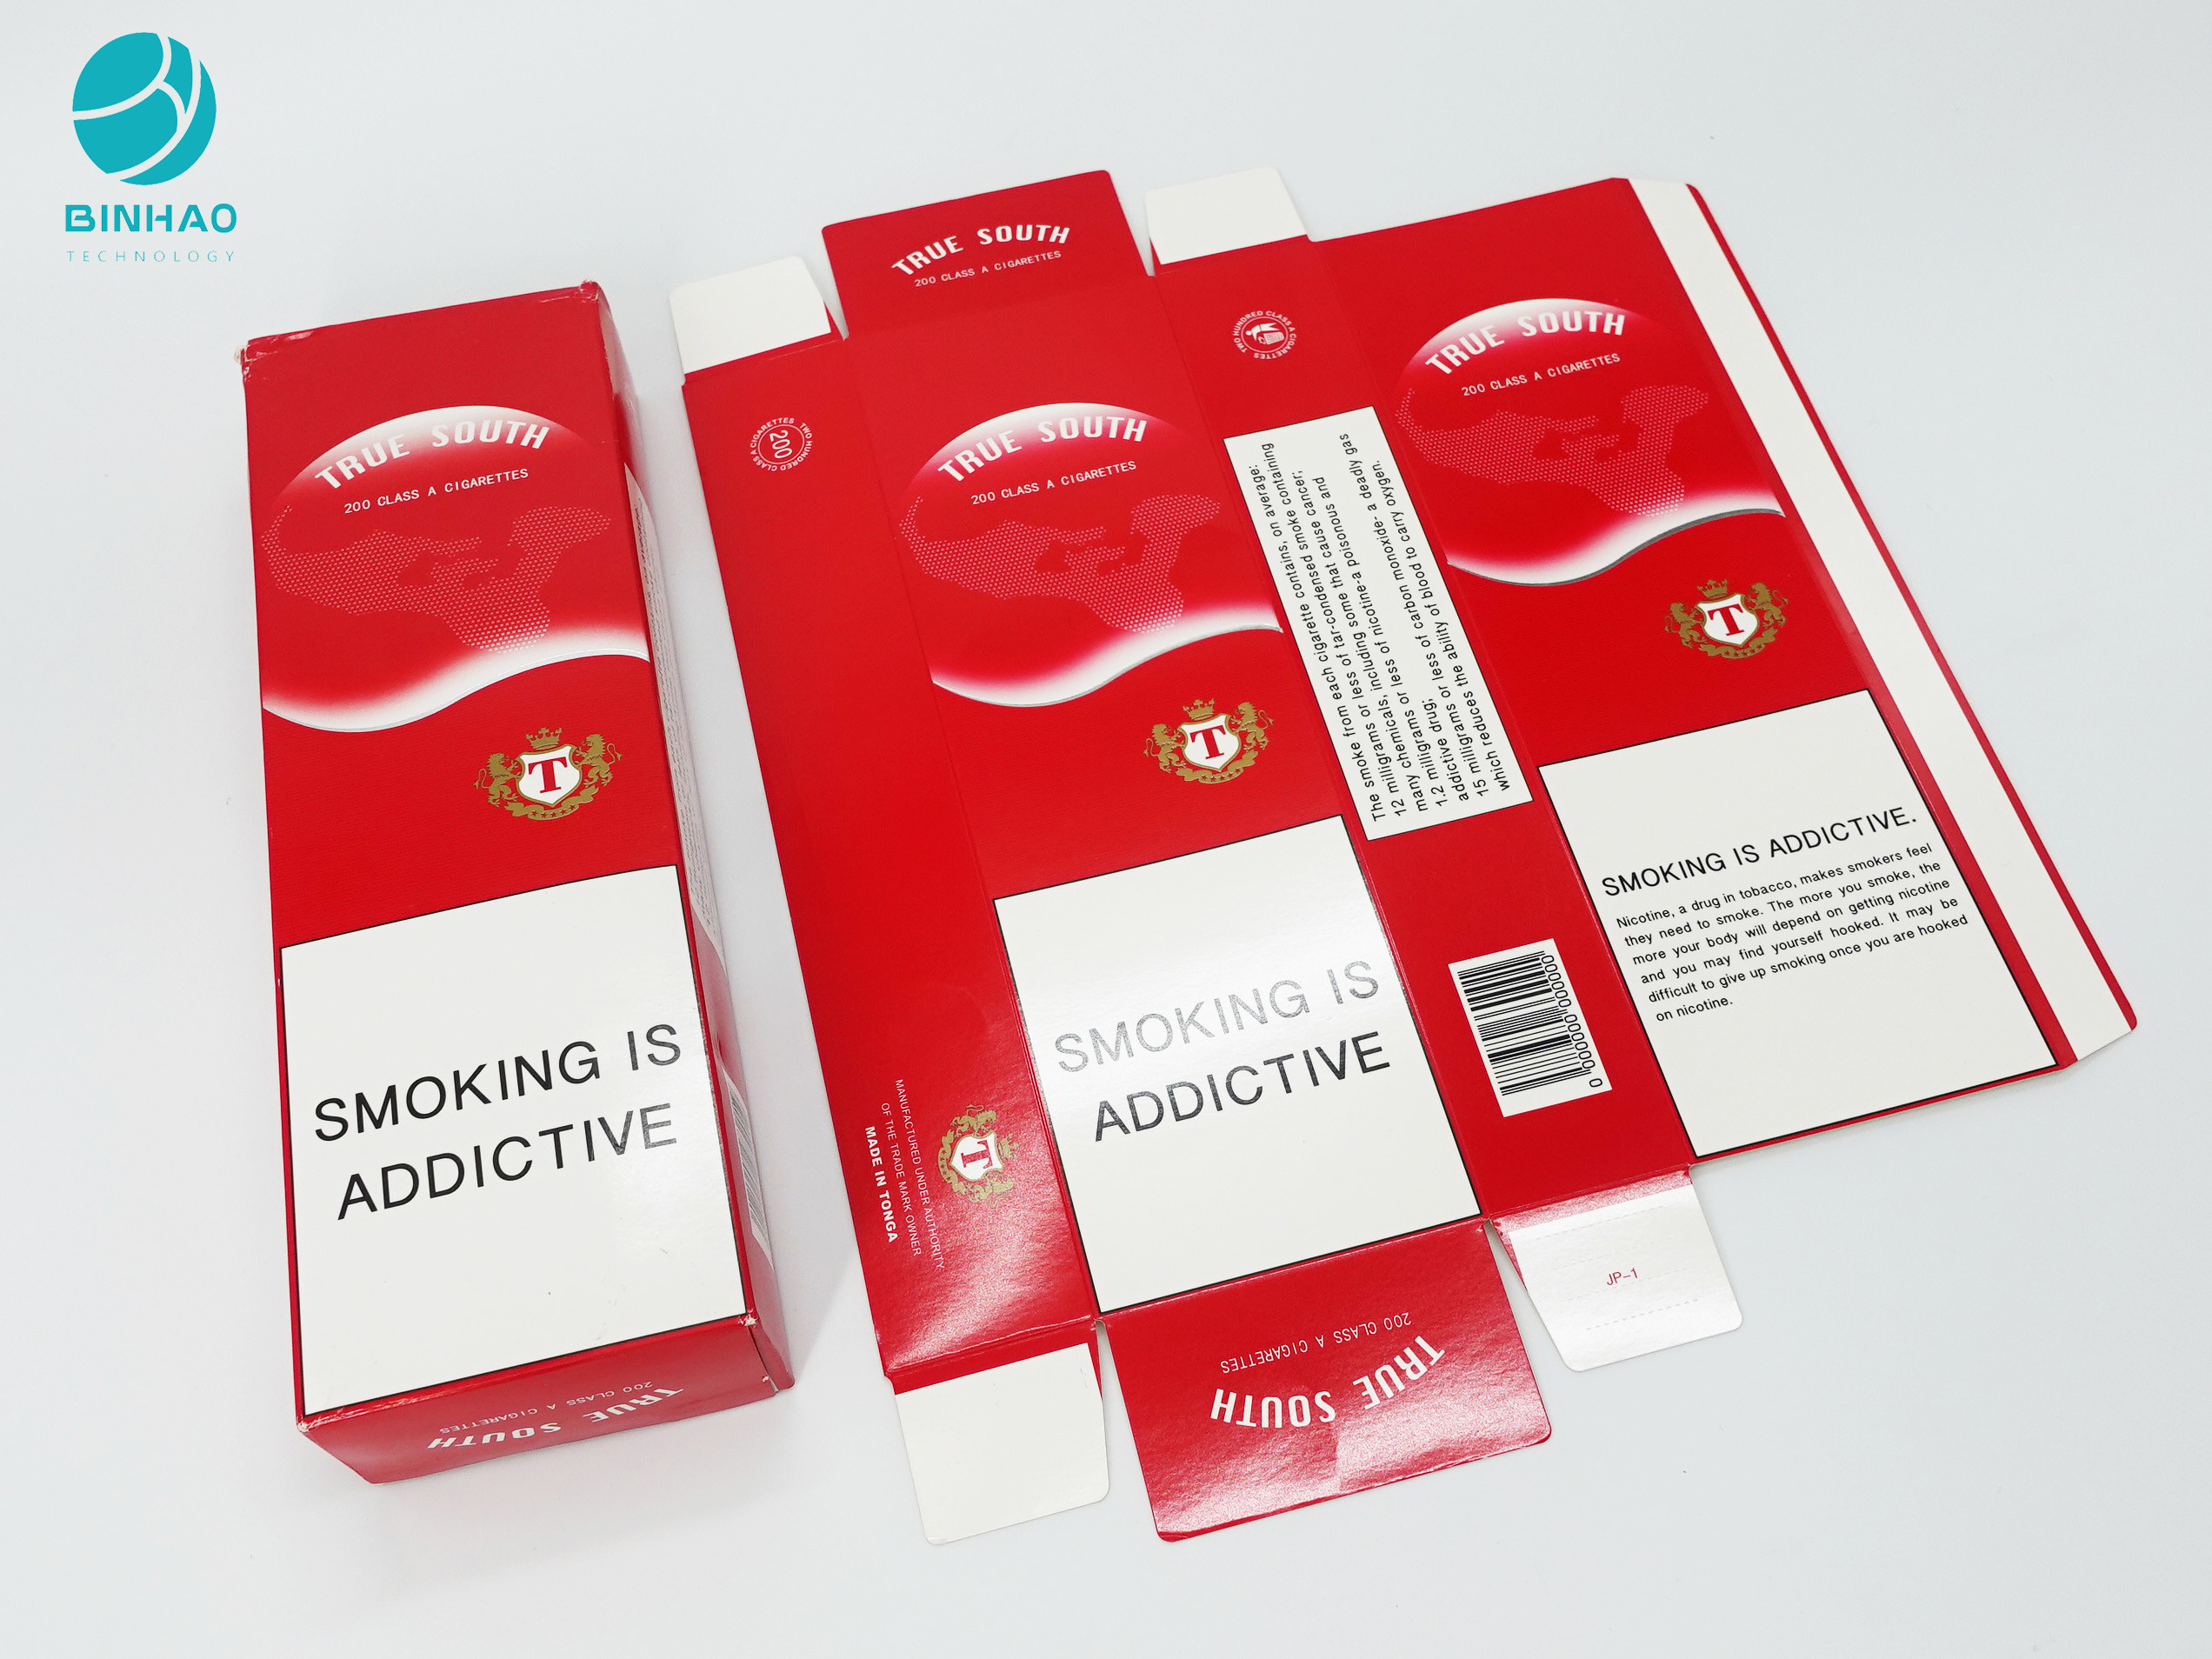 Dayanıklı Tütün Paketleri Kutu Ürünü İçin Sigara Paketleme Kutusu Kartonu